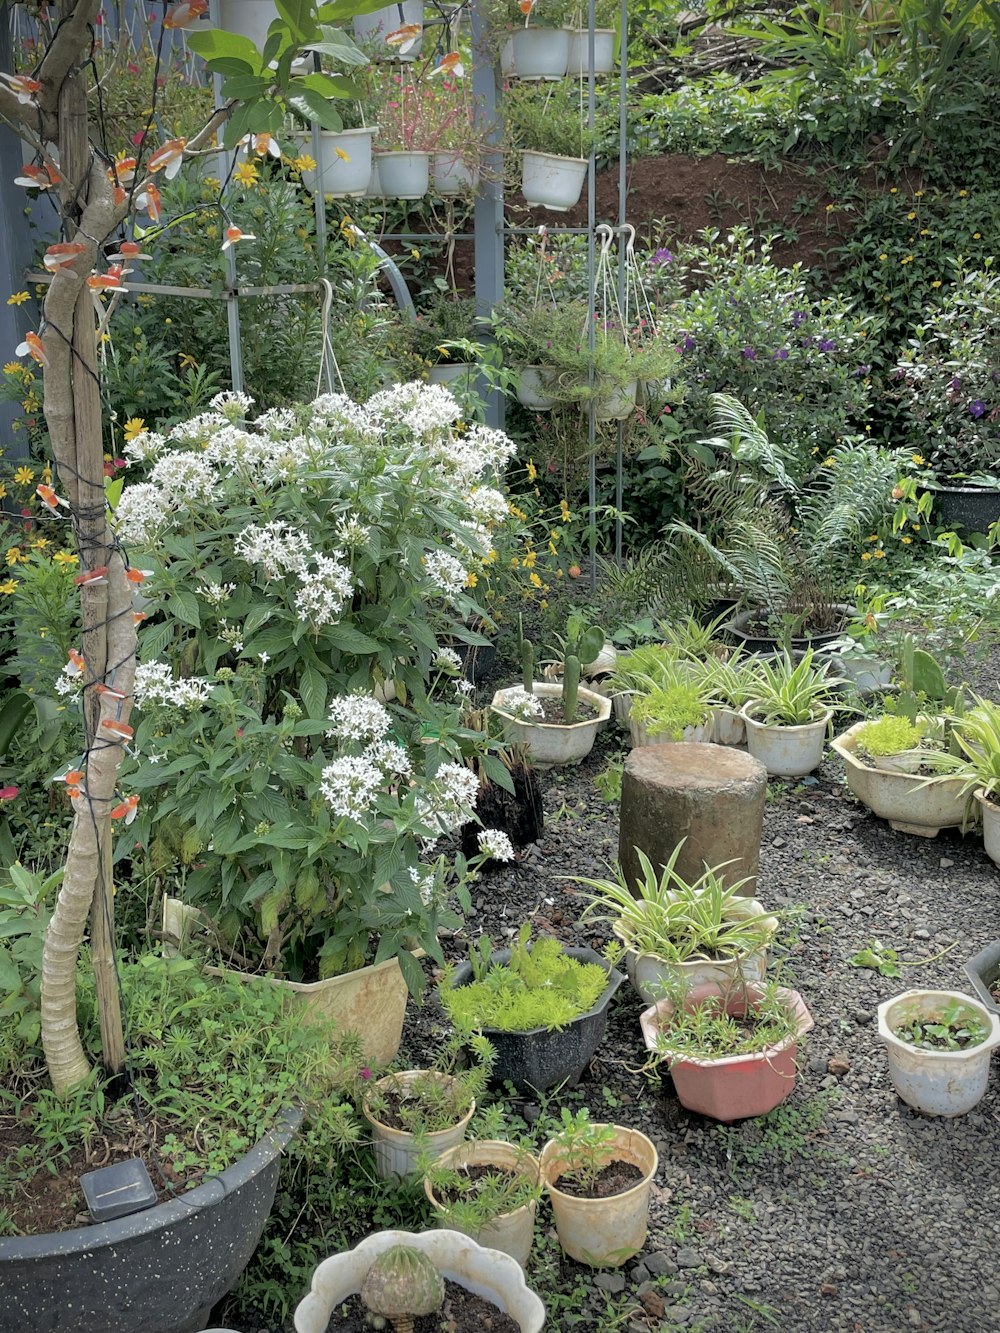 다양한 종류의 식물로 가득한 정원